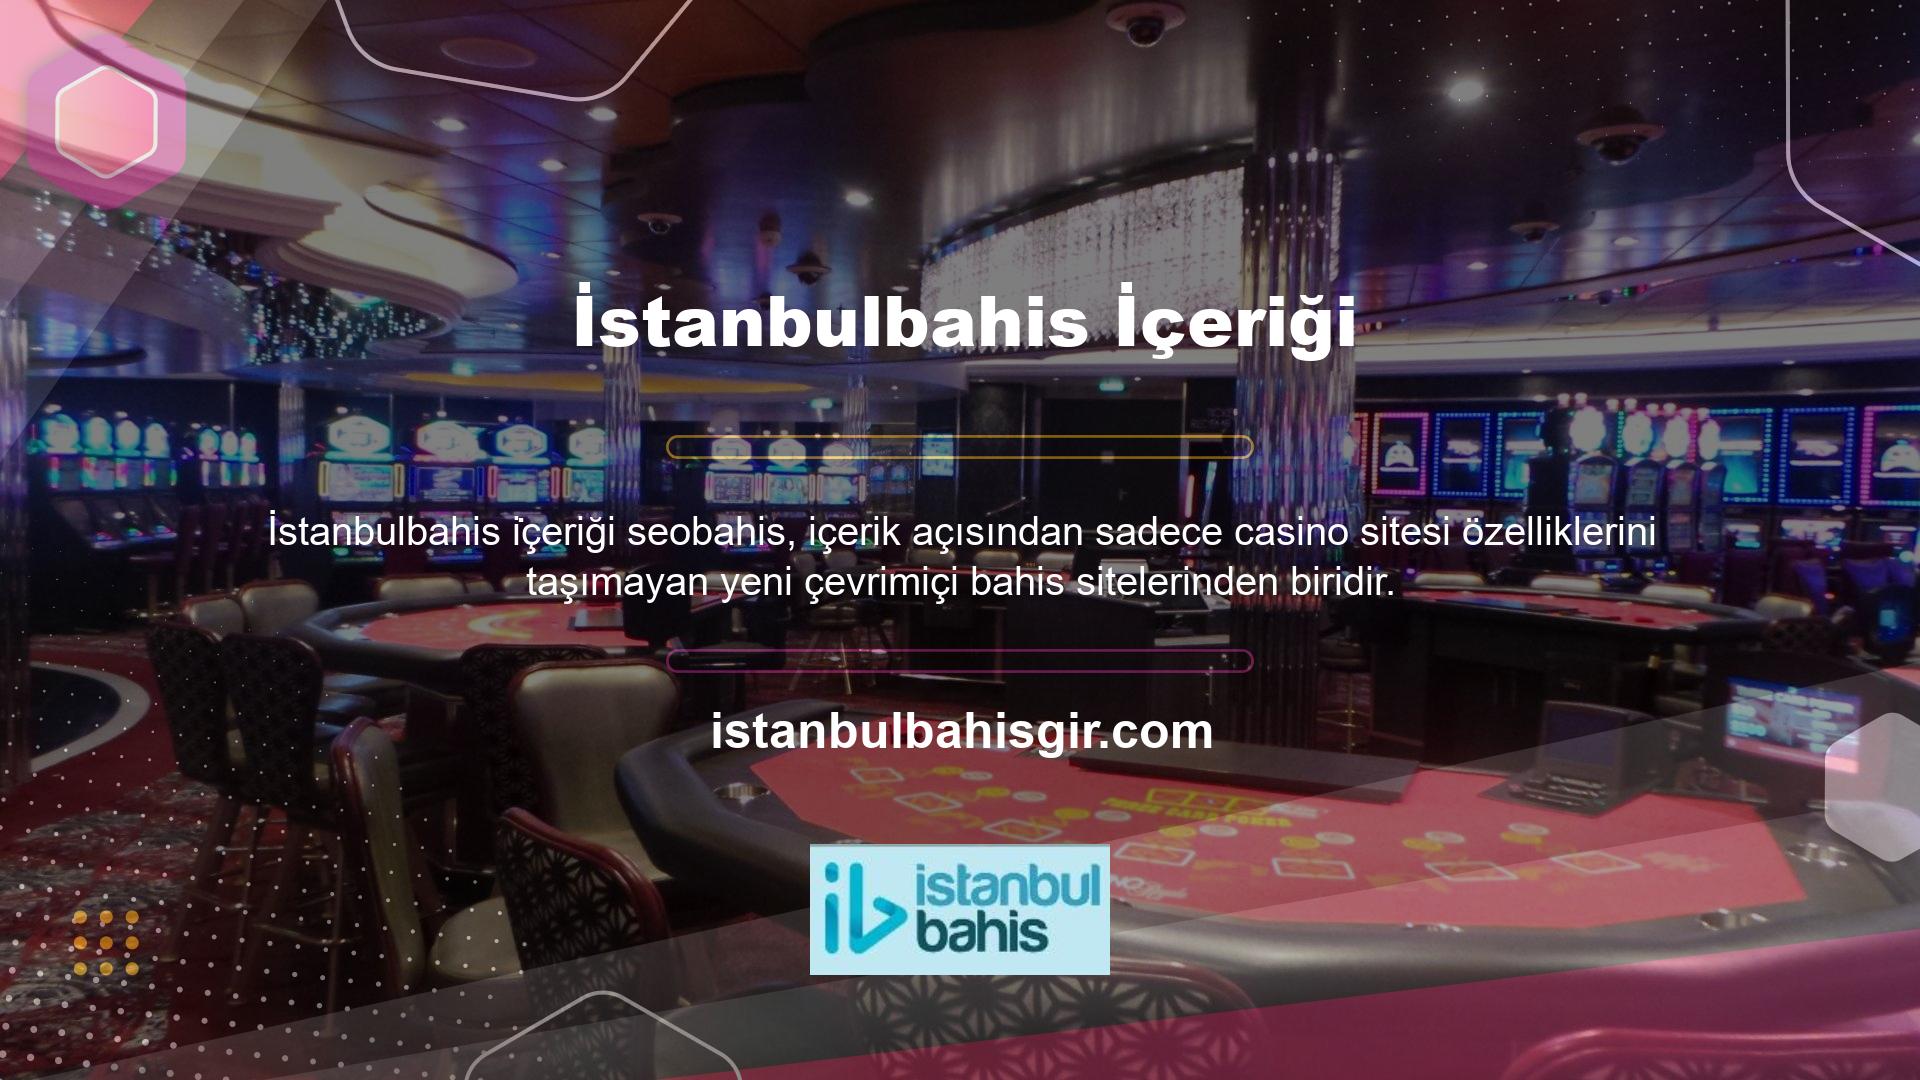 İstanbulbahis önemli bir eğlence platformu olup spor tutkunlarına son derece etkili bir hizmet sunmaktadır